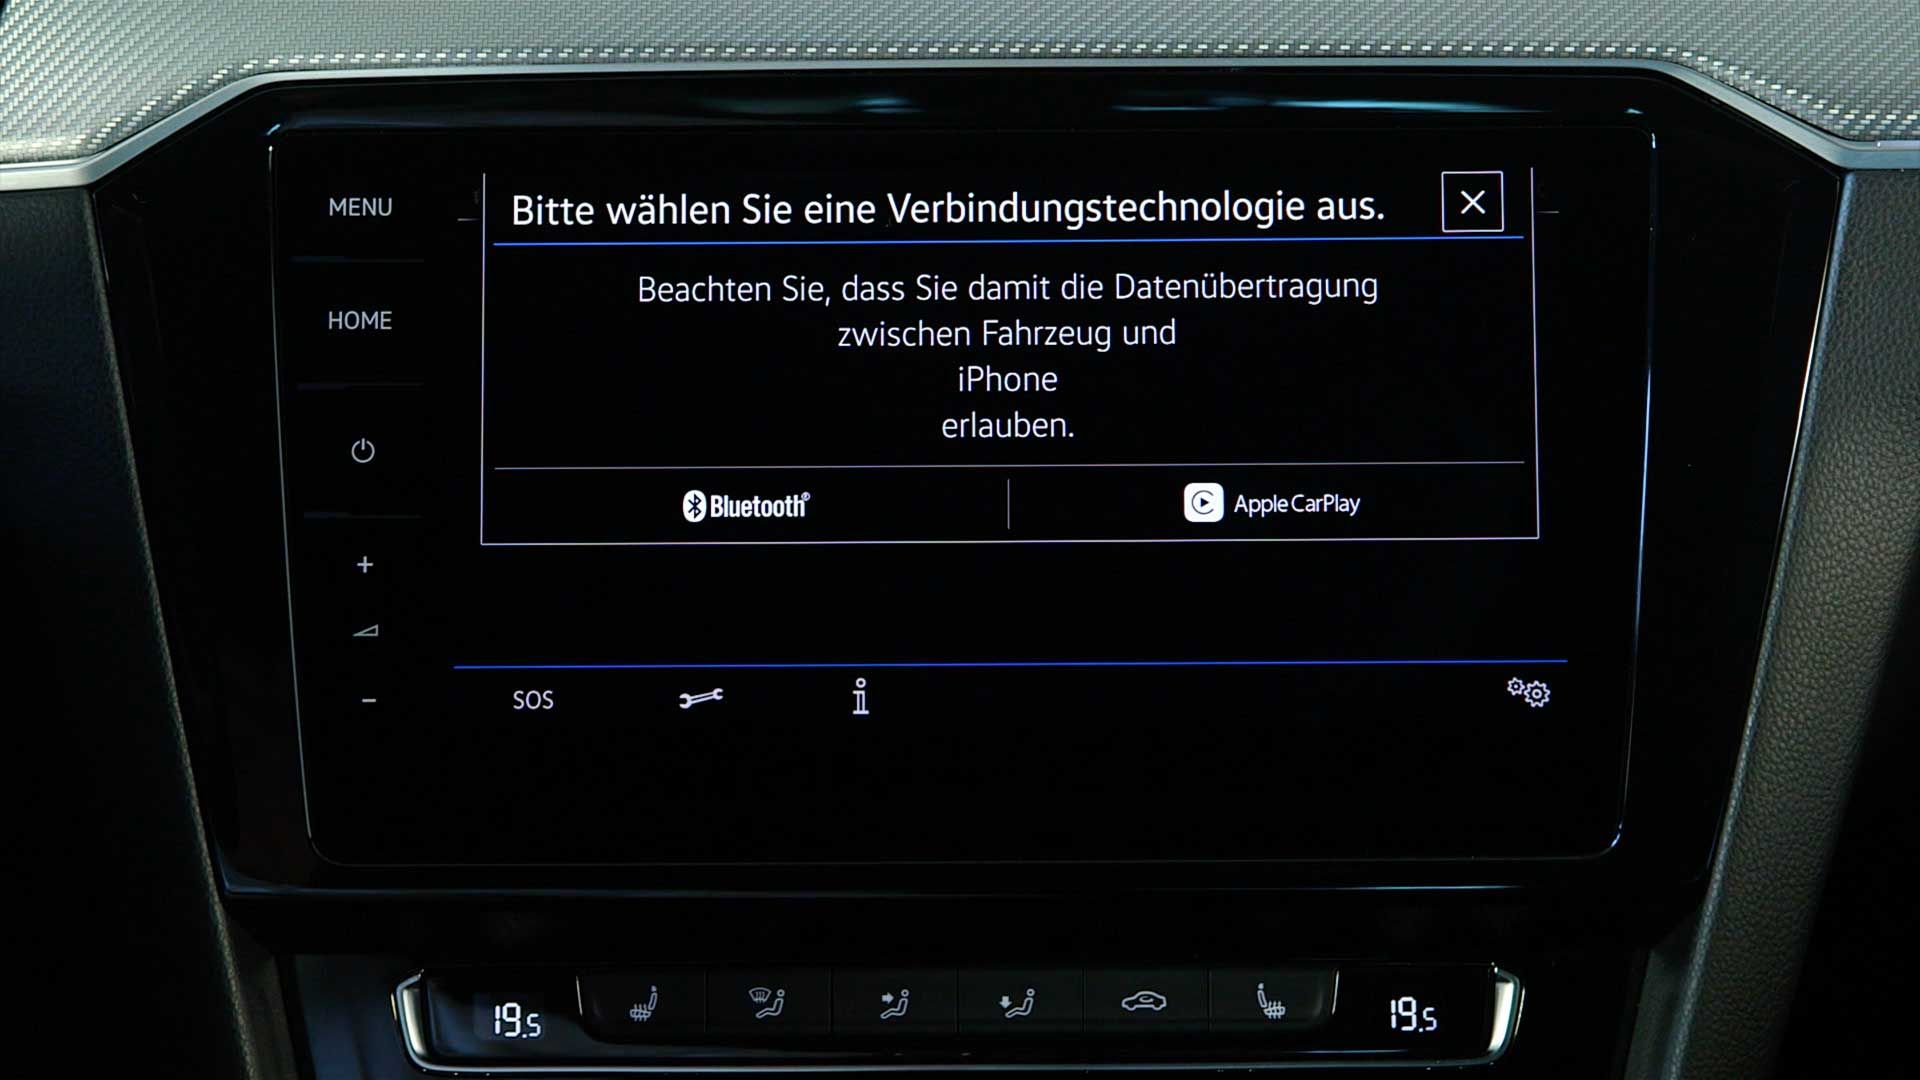 Bildschirm im Volkswagen mit Ansicht von App Connect